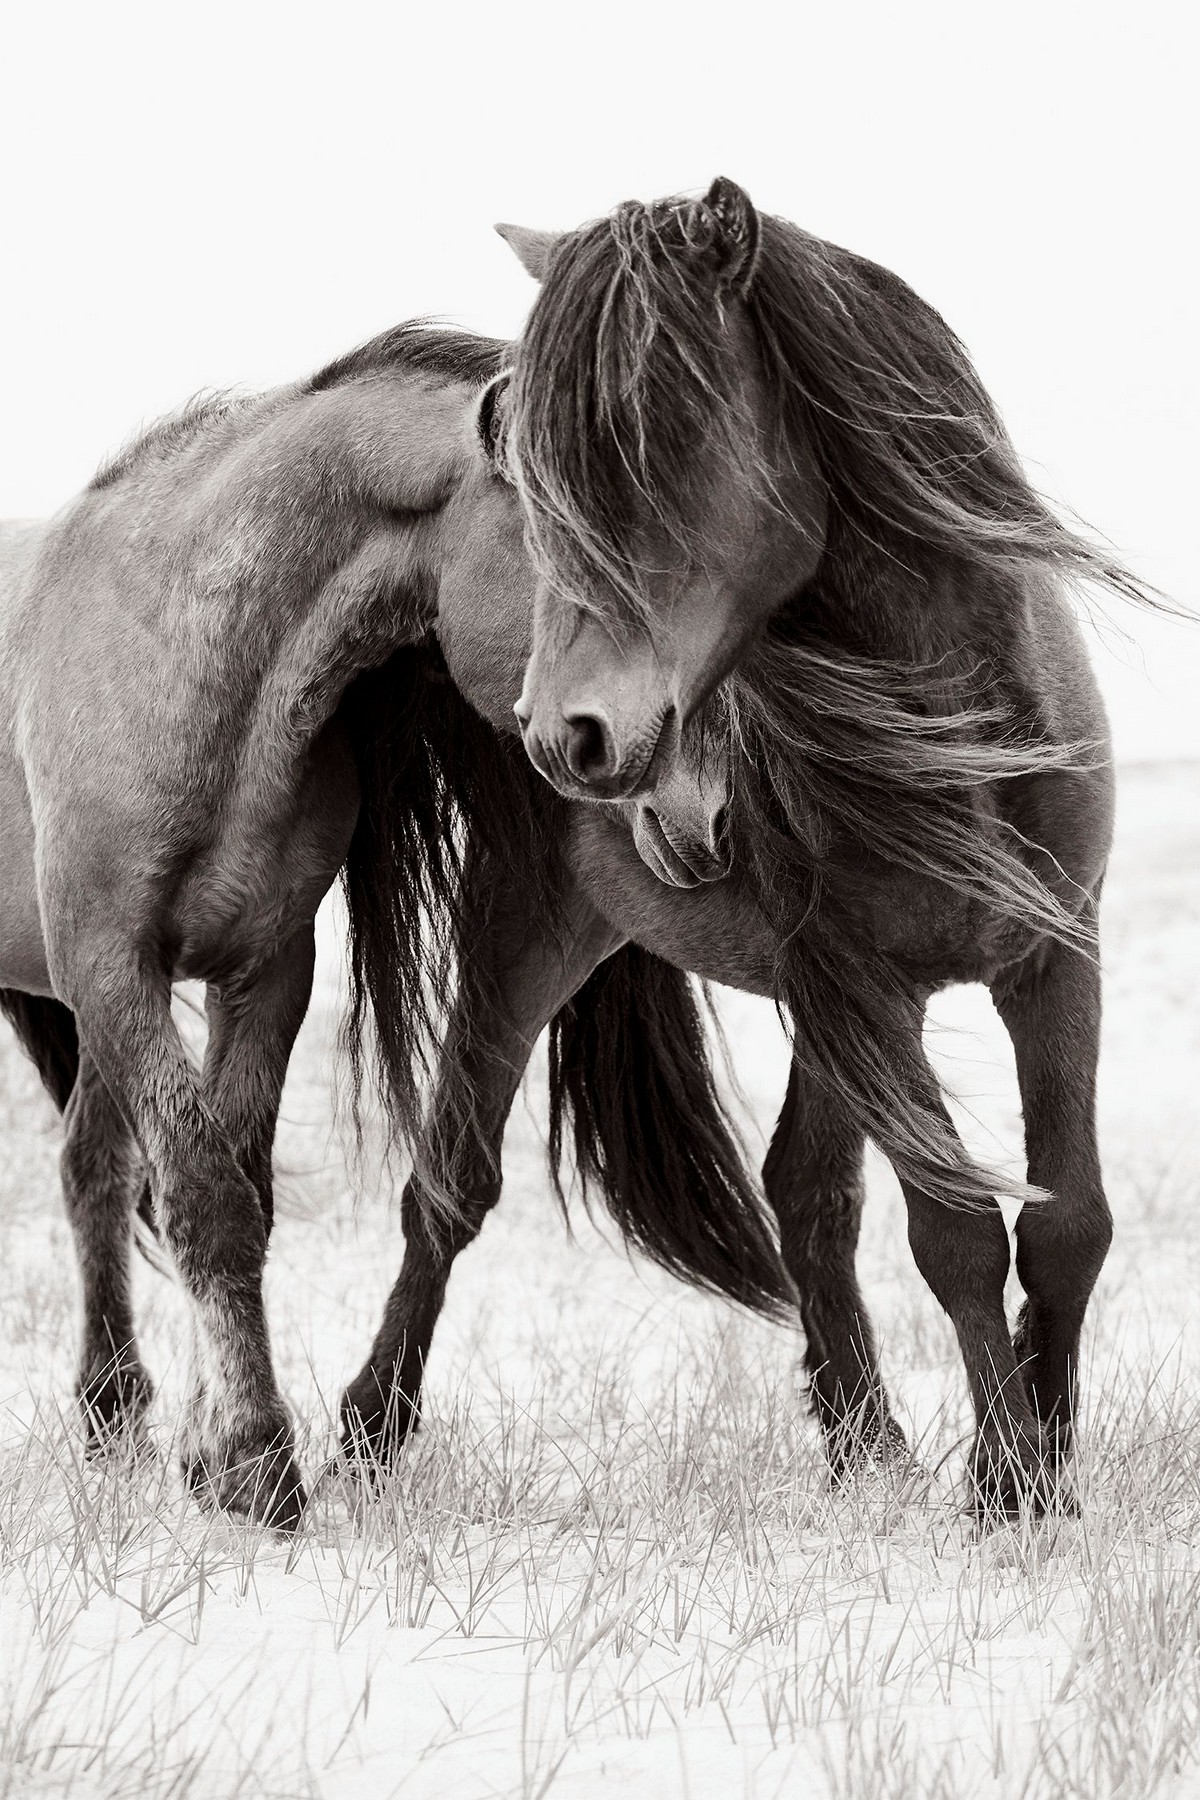 Снимки диких лошадей, живущих на одном из отдаленных островов мира